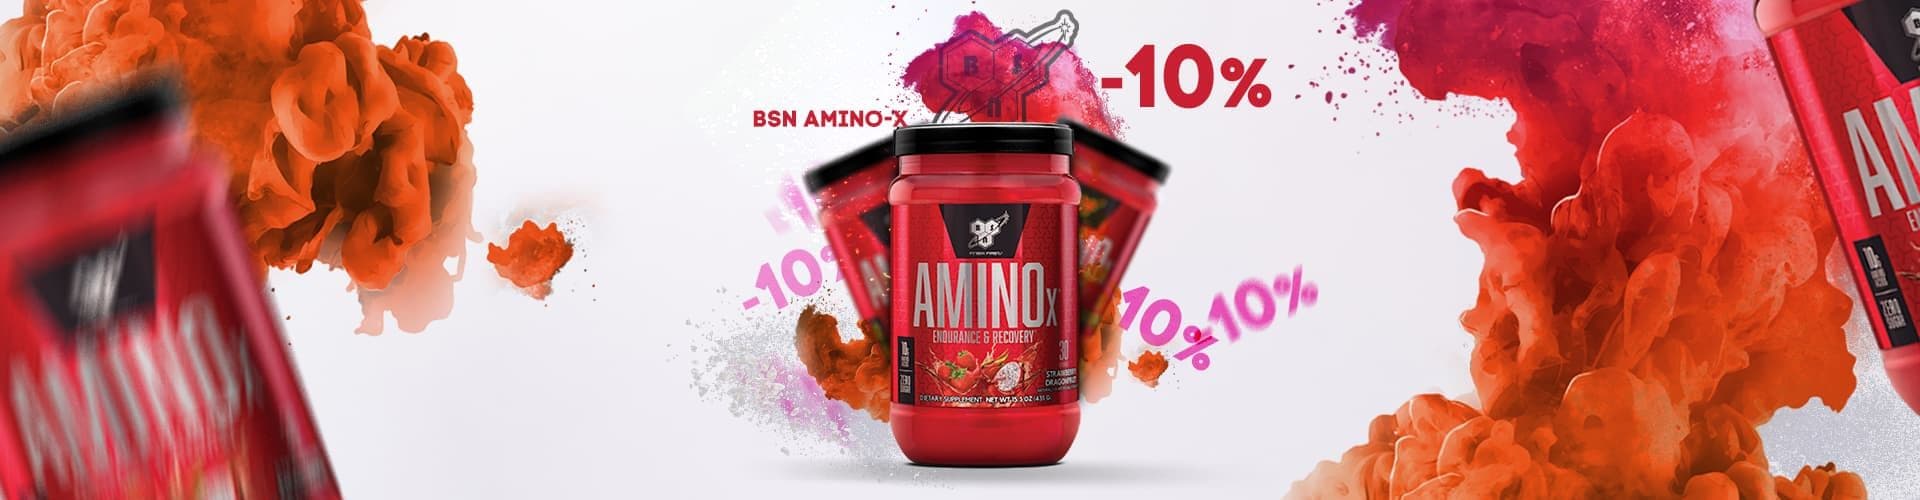 Скидка 10% на Amino-X